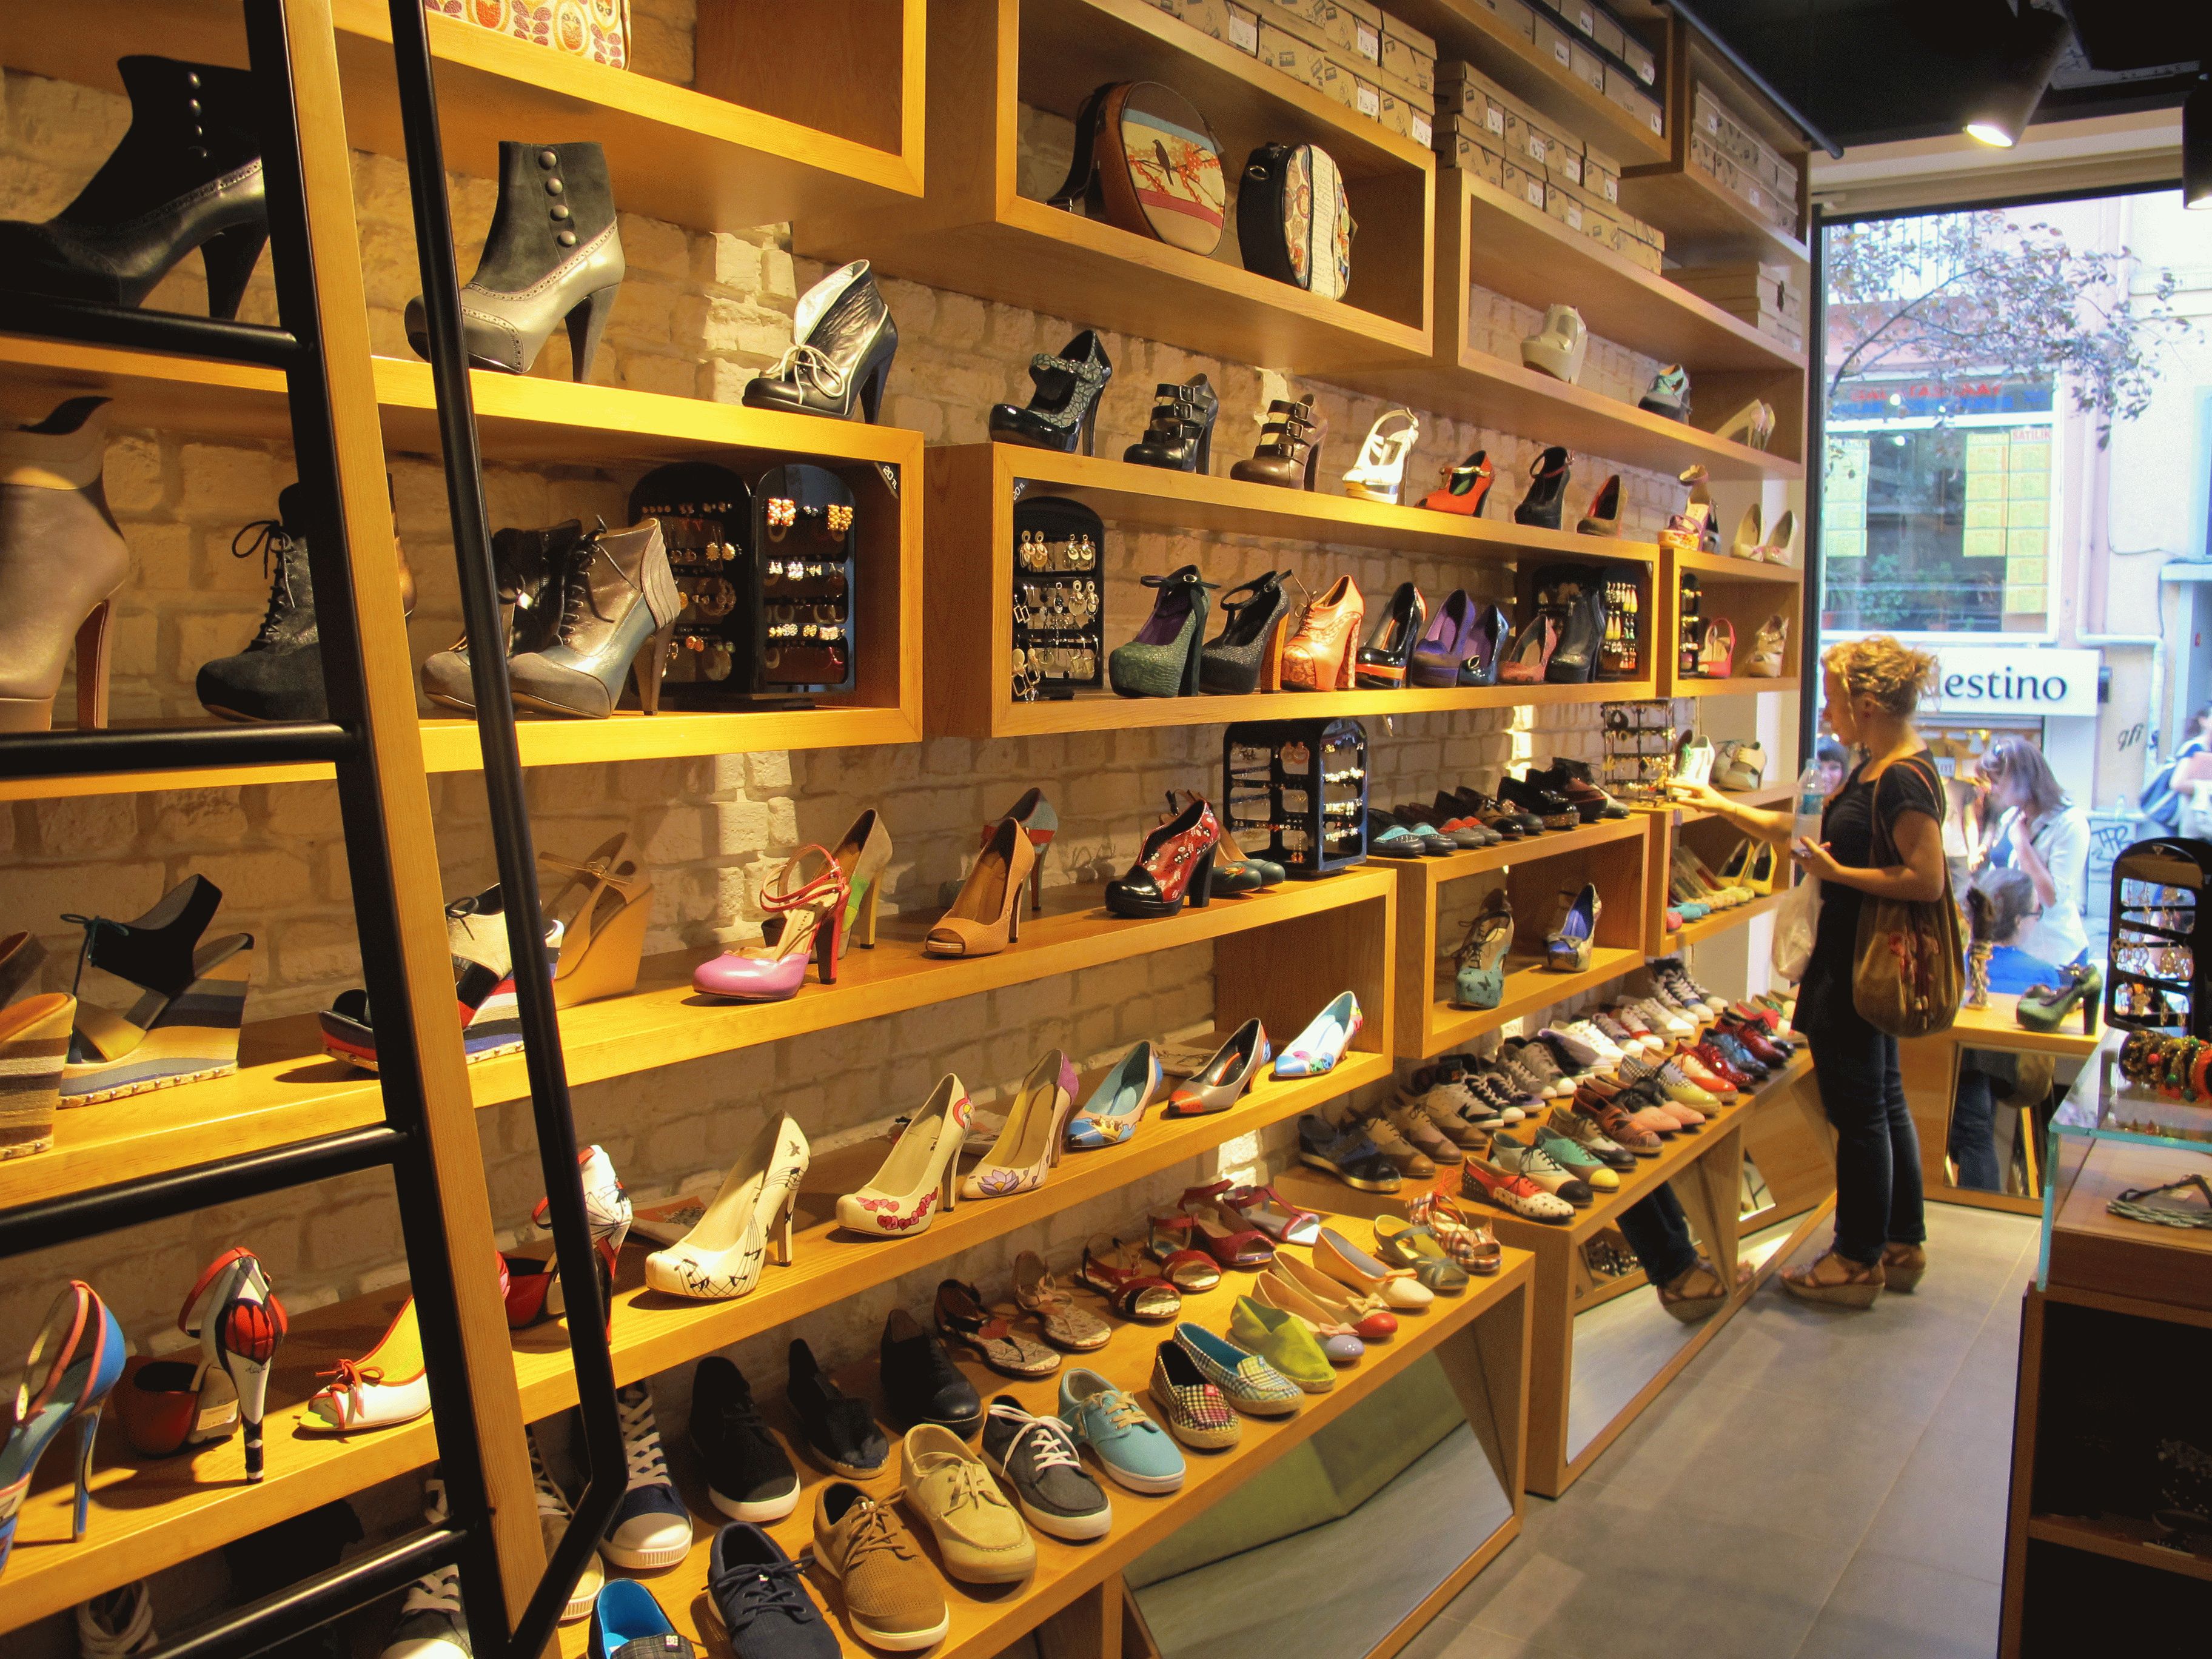 Универмаг обуви. Магазин обуви. Обувные товары. Красивый магазин обуви. Магазин обуви фото.